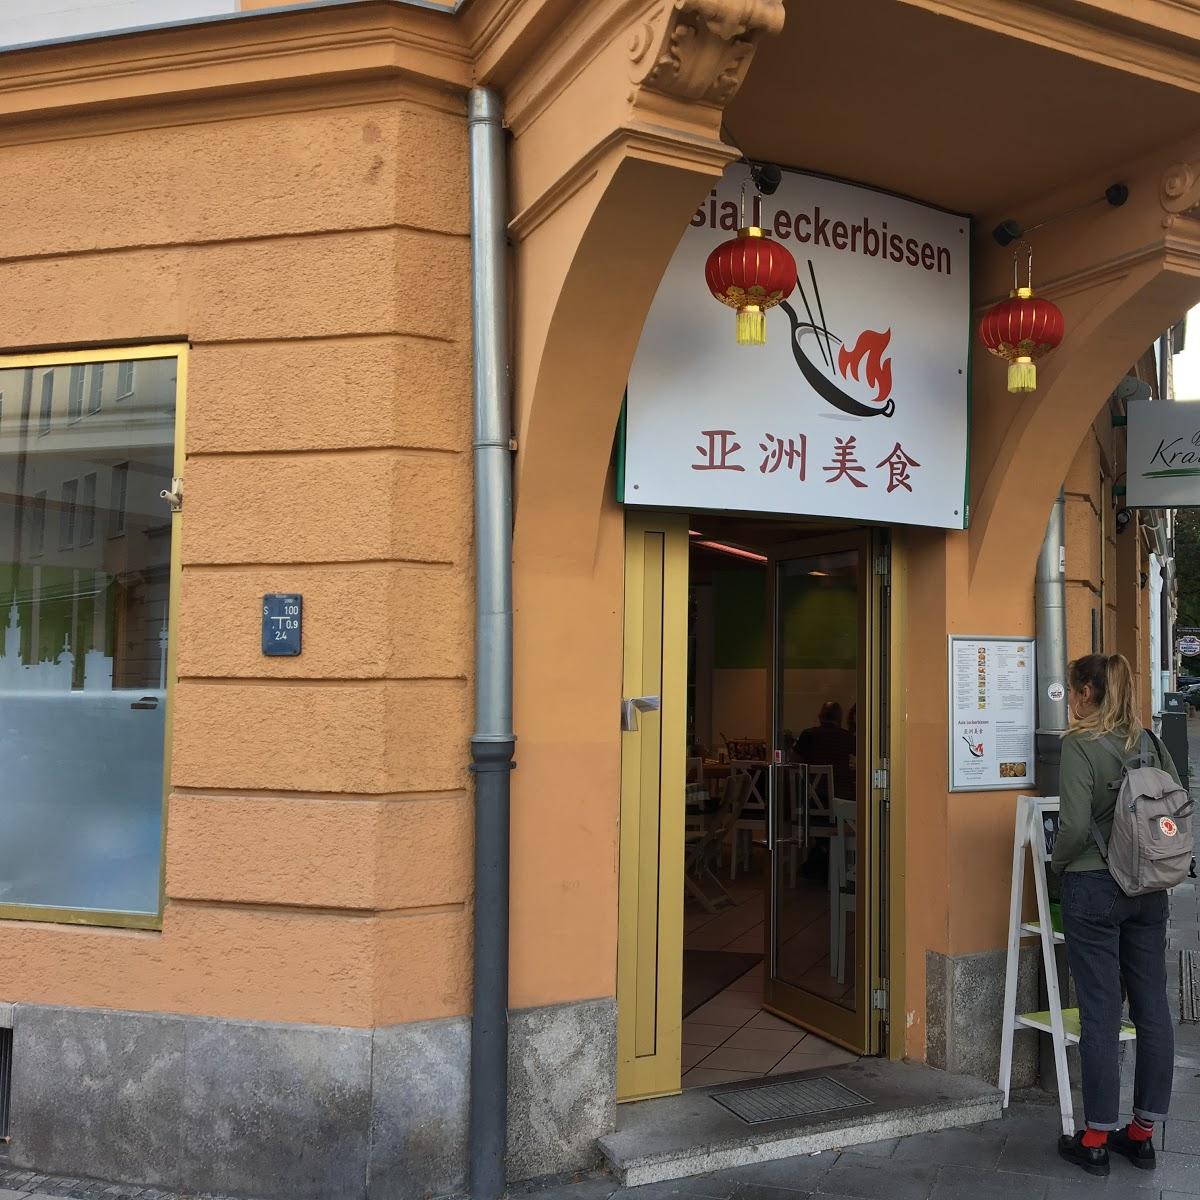 Restaurant "Asia Leckerbissen" in München